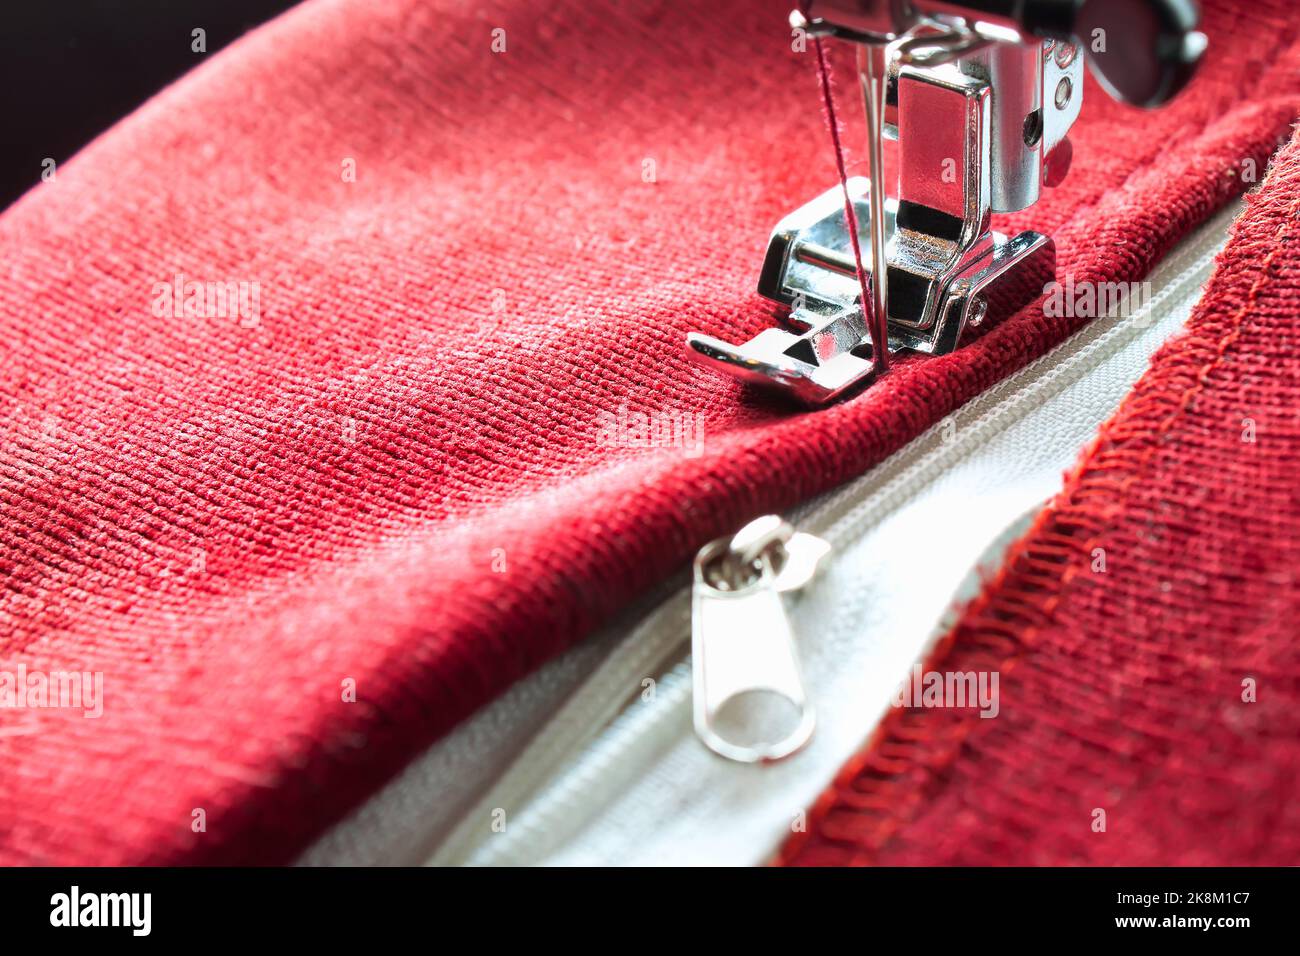 Machine à coudre moderne avec des ragoûts de pied de presse spéciaux sur la fermeture éclair sur l'article rouge de vêtements. Processus de couture Banque D'Images